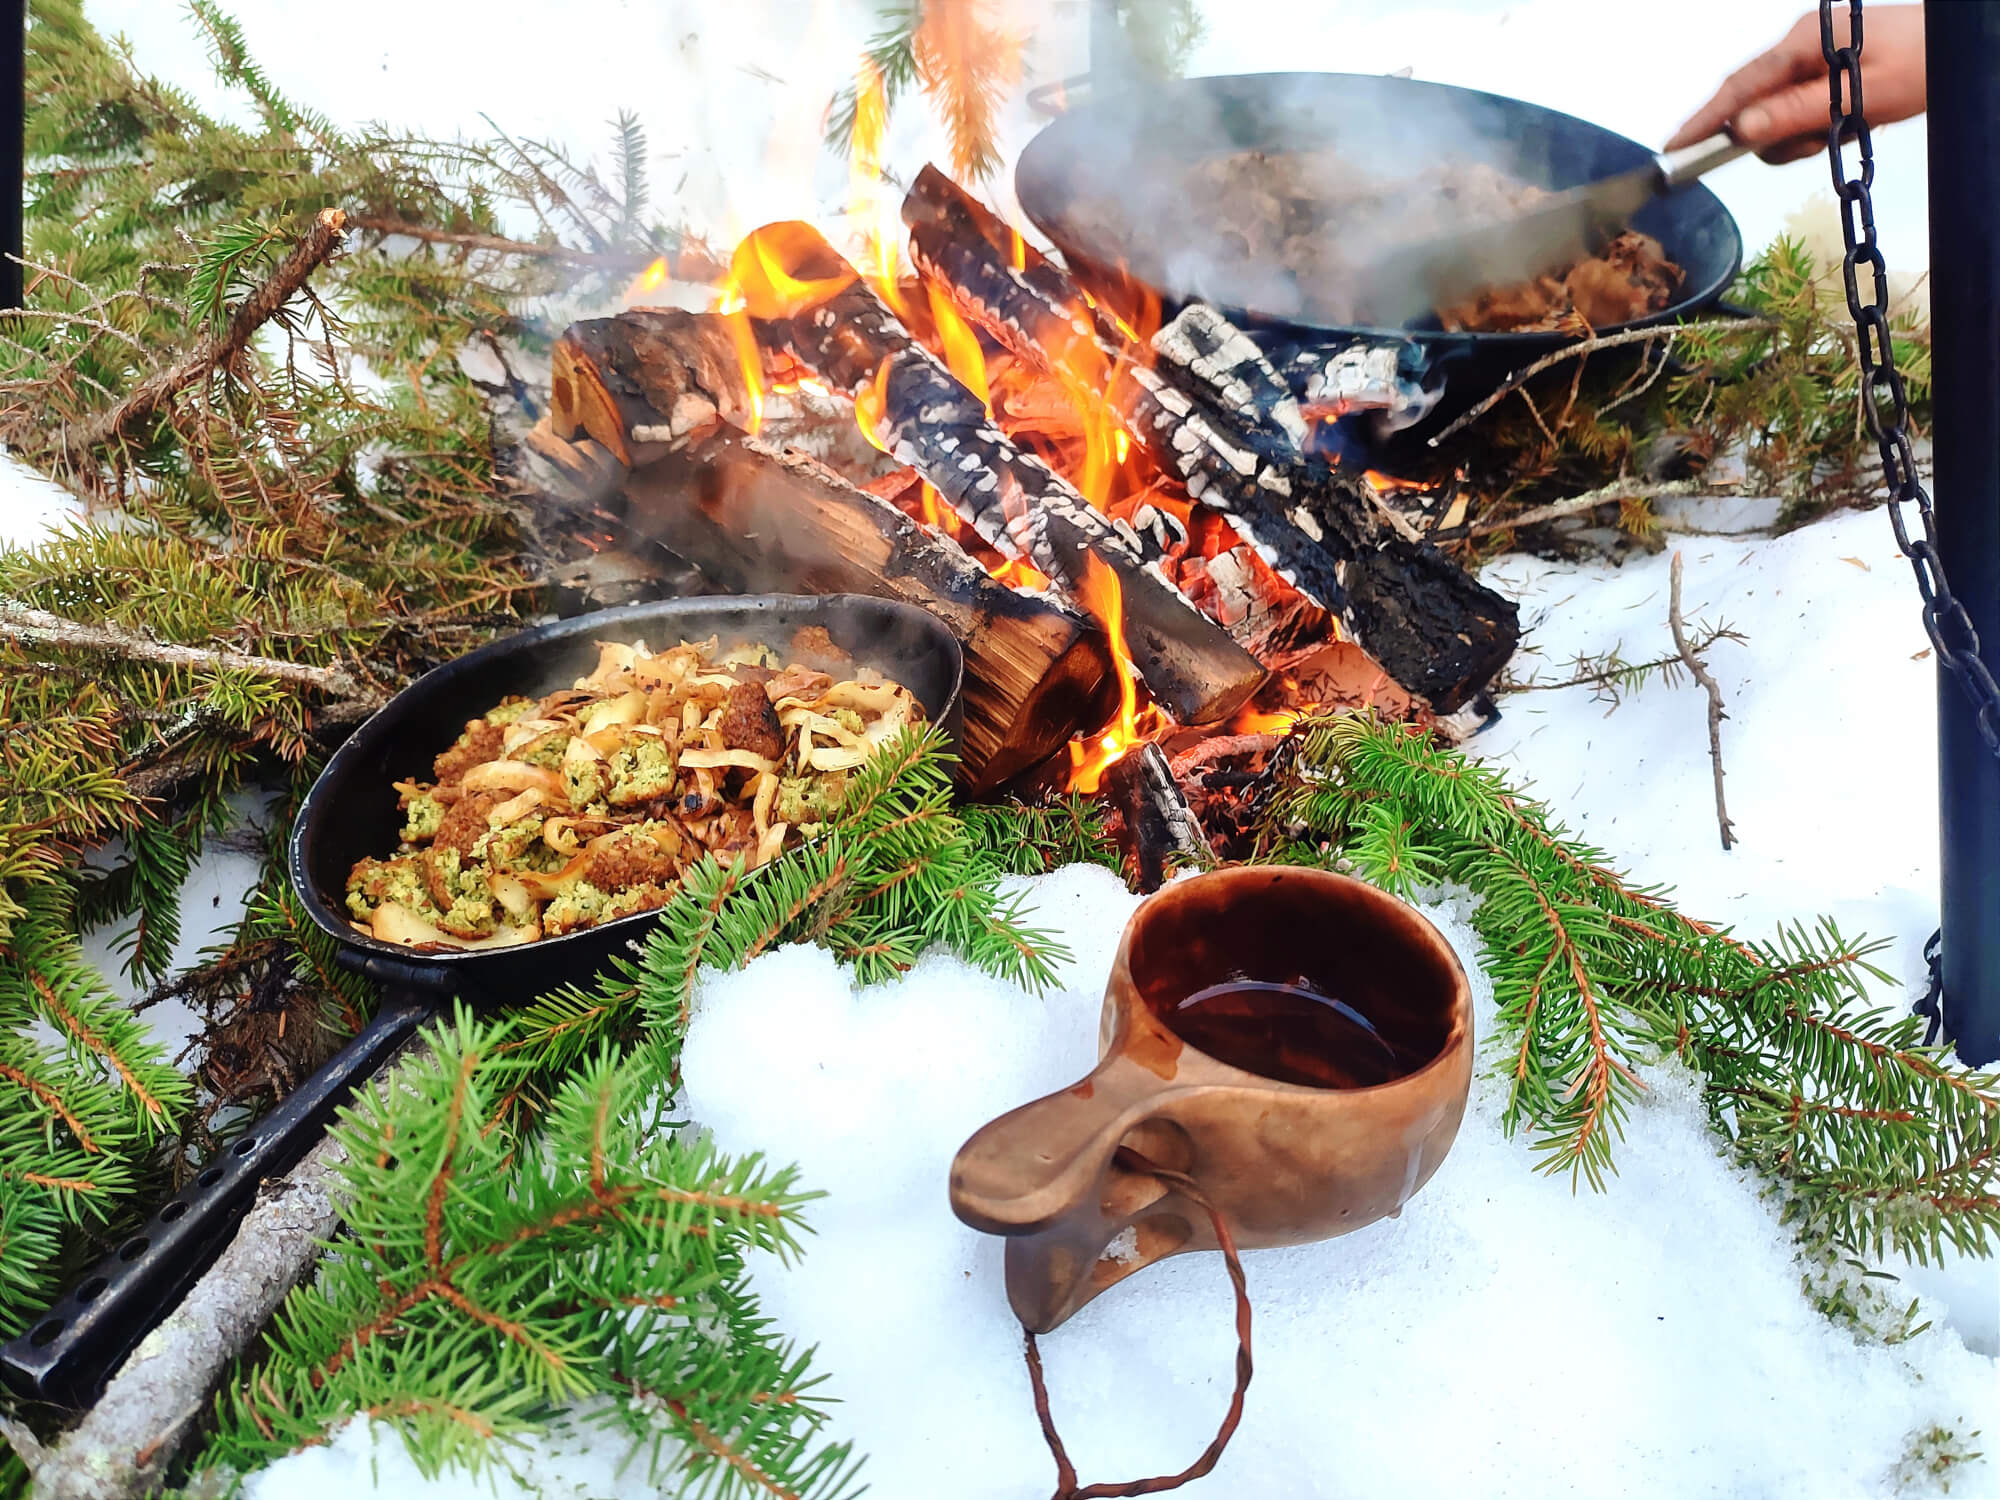 Déjeuner au coin du feu en laponie suédoise